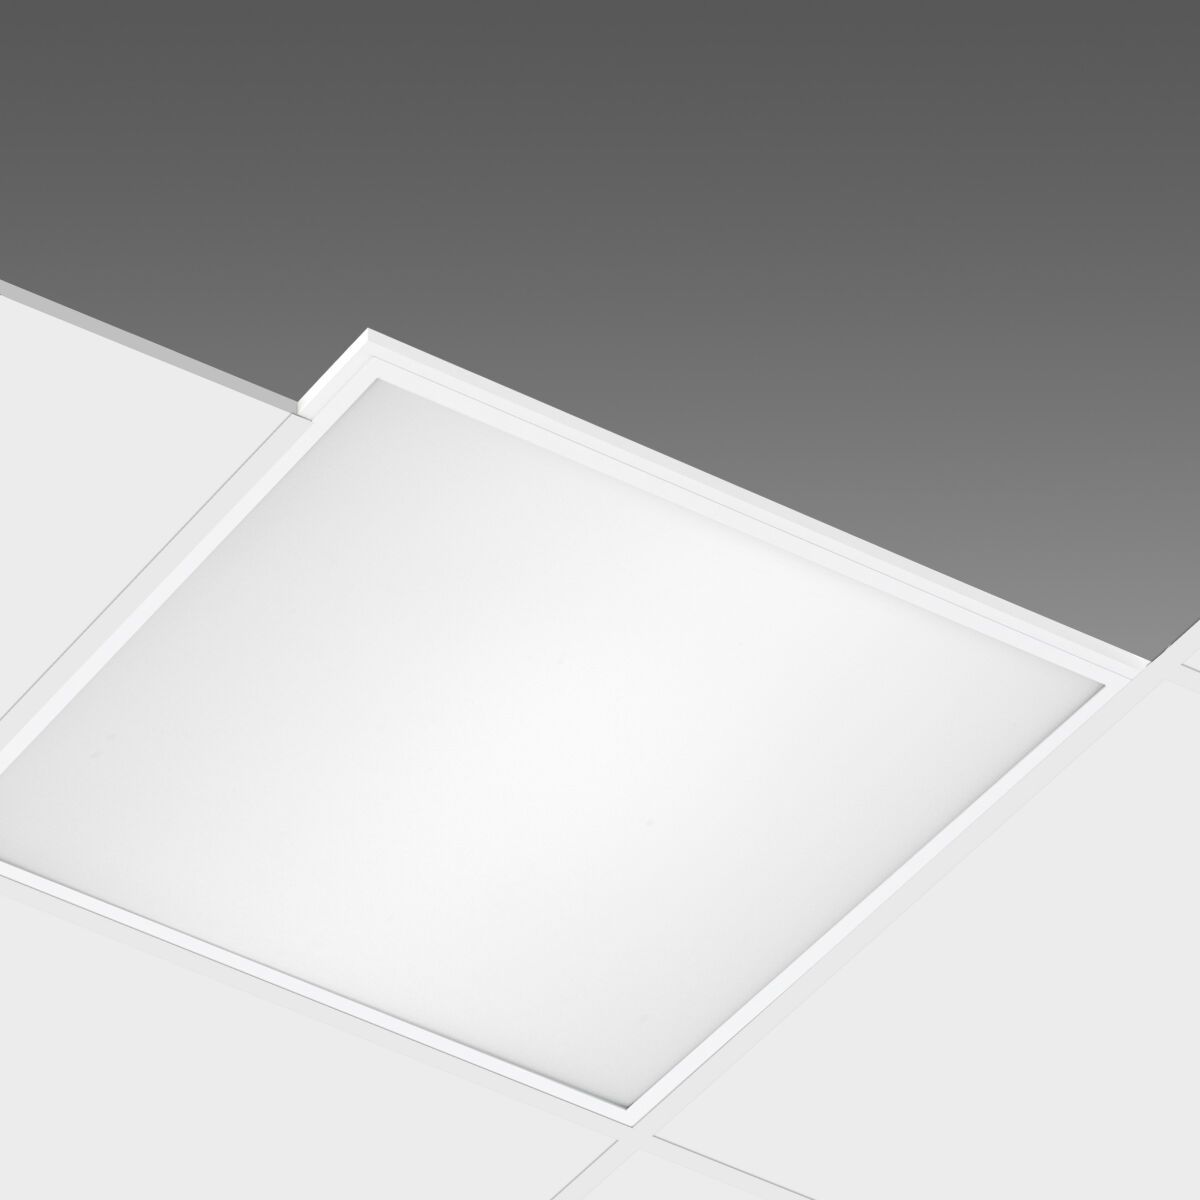 Pannelli LED 60x60 e retroilluminati BACKLIT: L'evoluzione  dell'illuminazione!